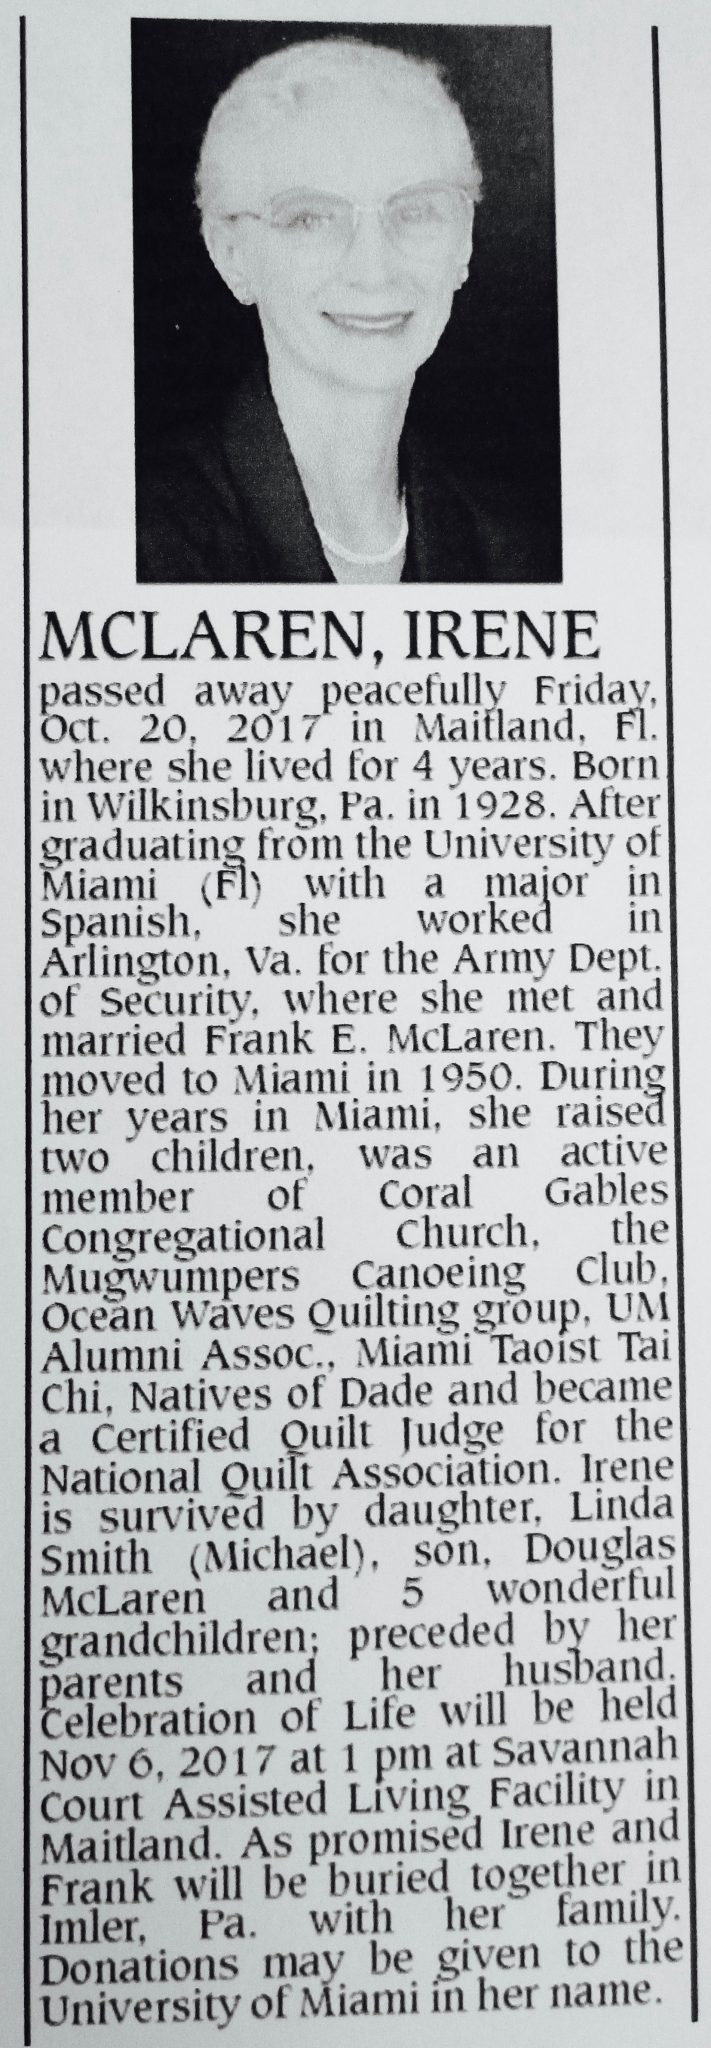 Obituary from Miami Herald